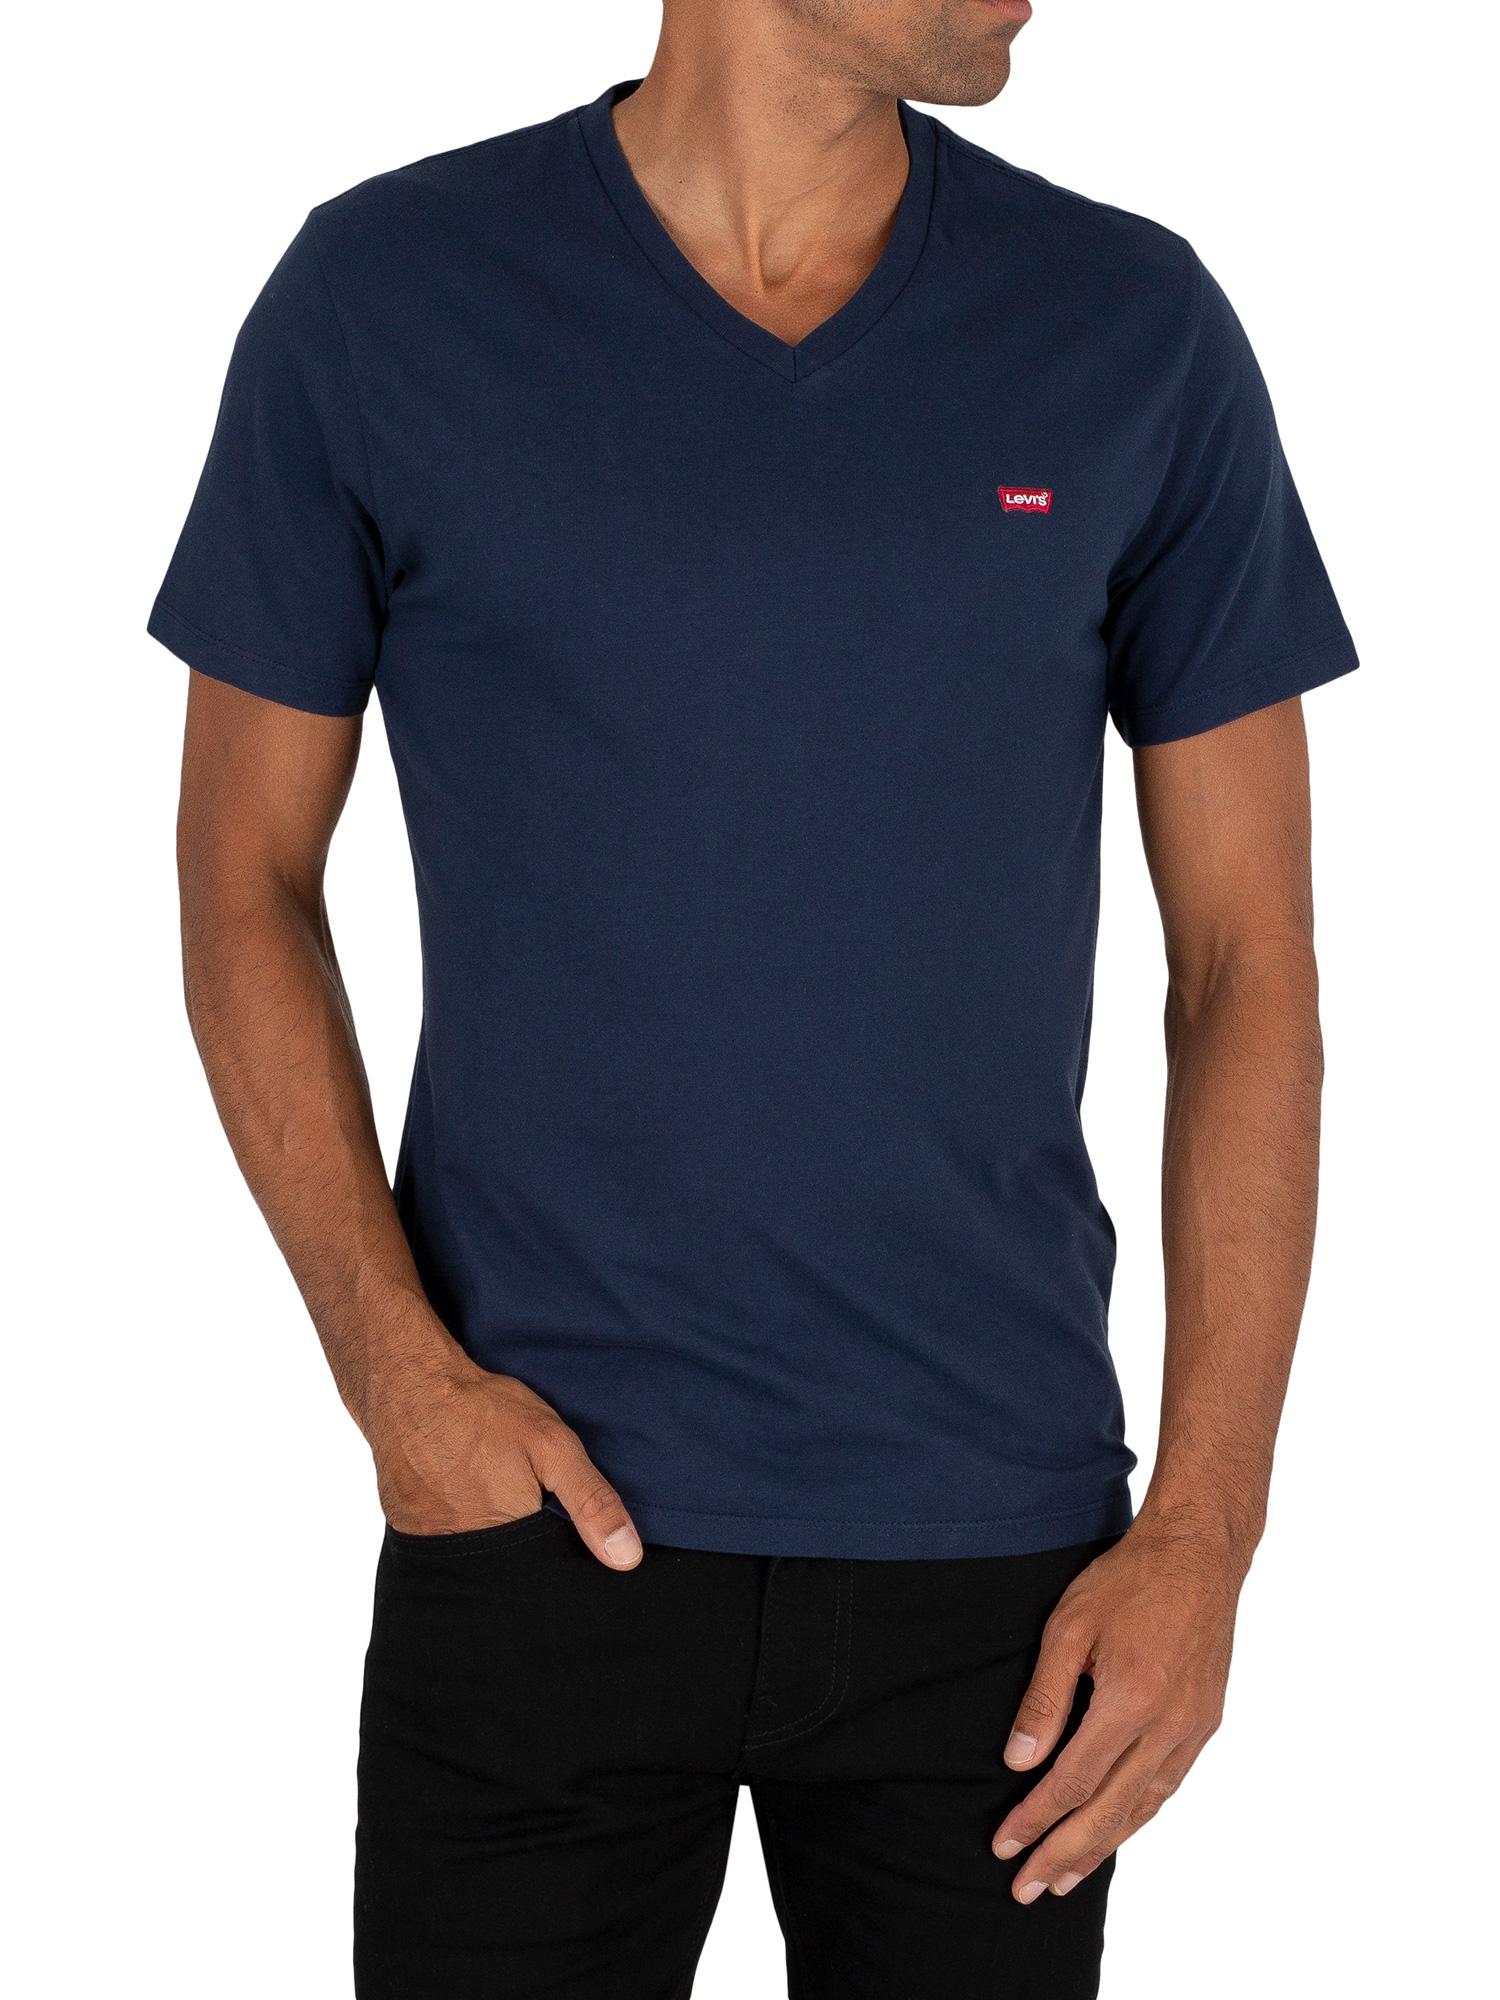 V Neck Levi's T Shirt Sale, SAVE 50% - mpgc.net